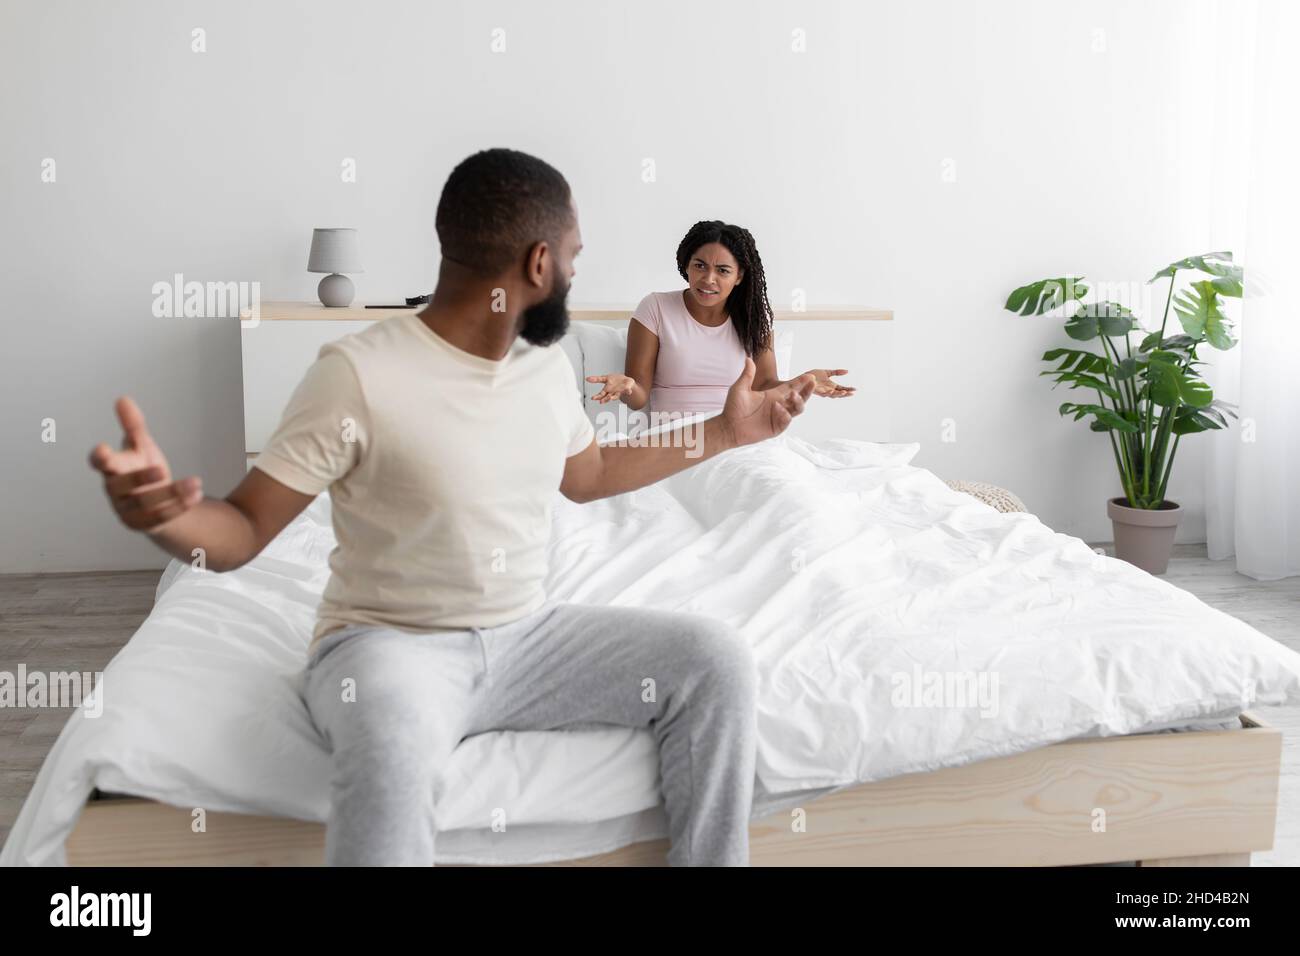 Irate infelice eccitata la donna nera millennial e l'uomo giurare, freaking out, urlando e gesturing a letto Foto Stock